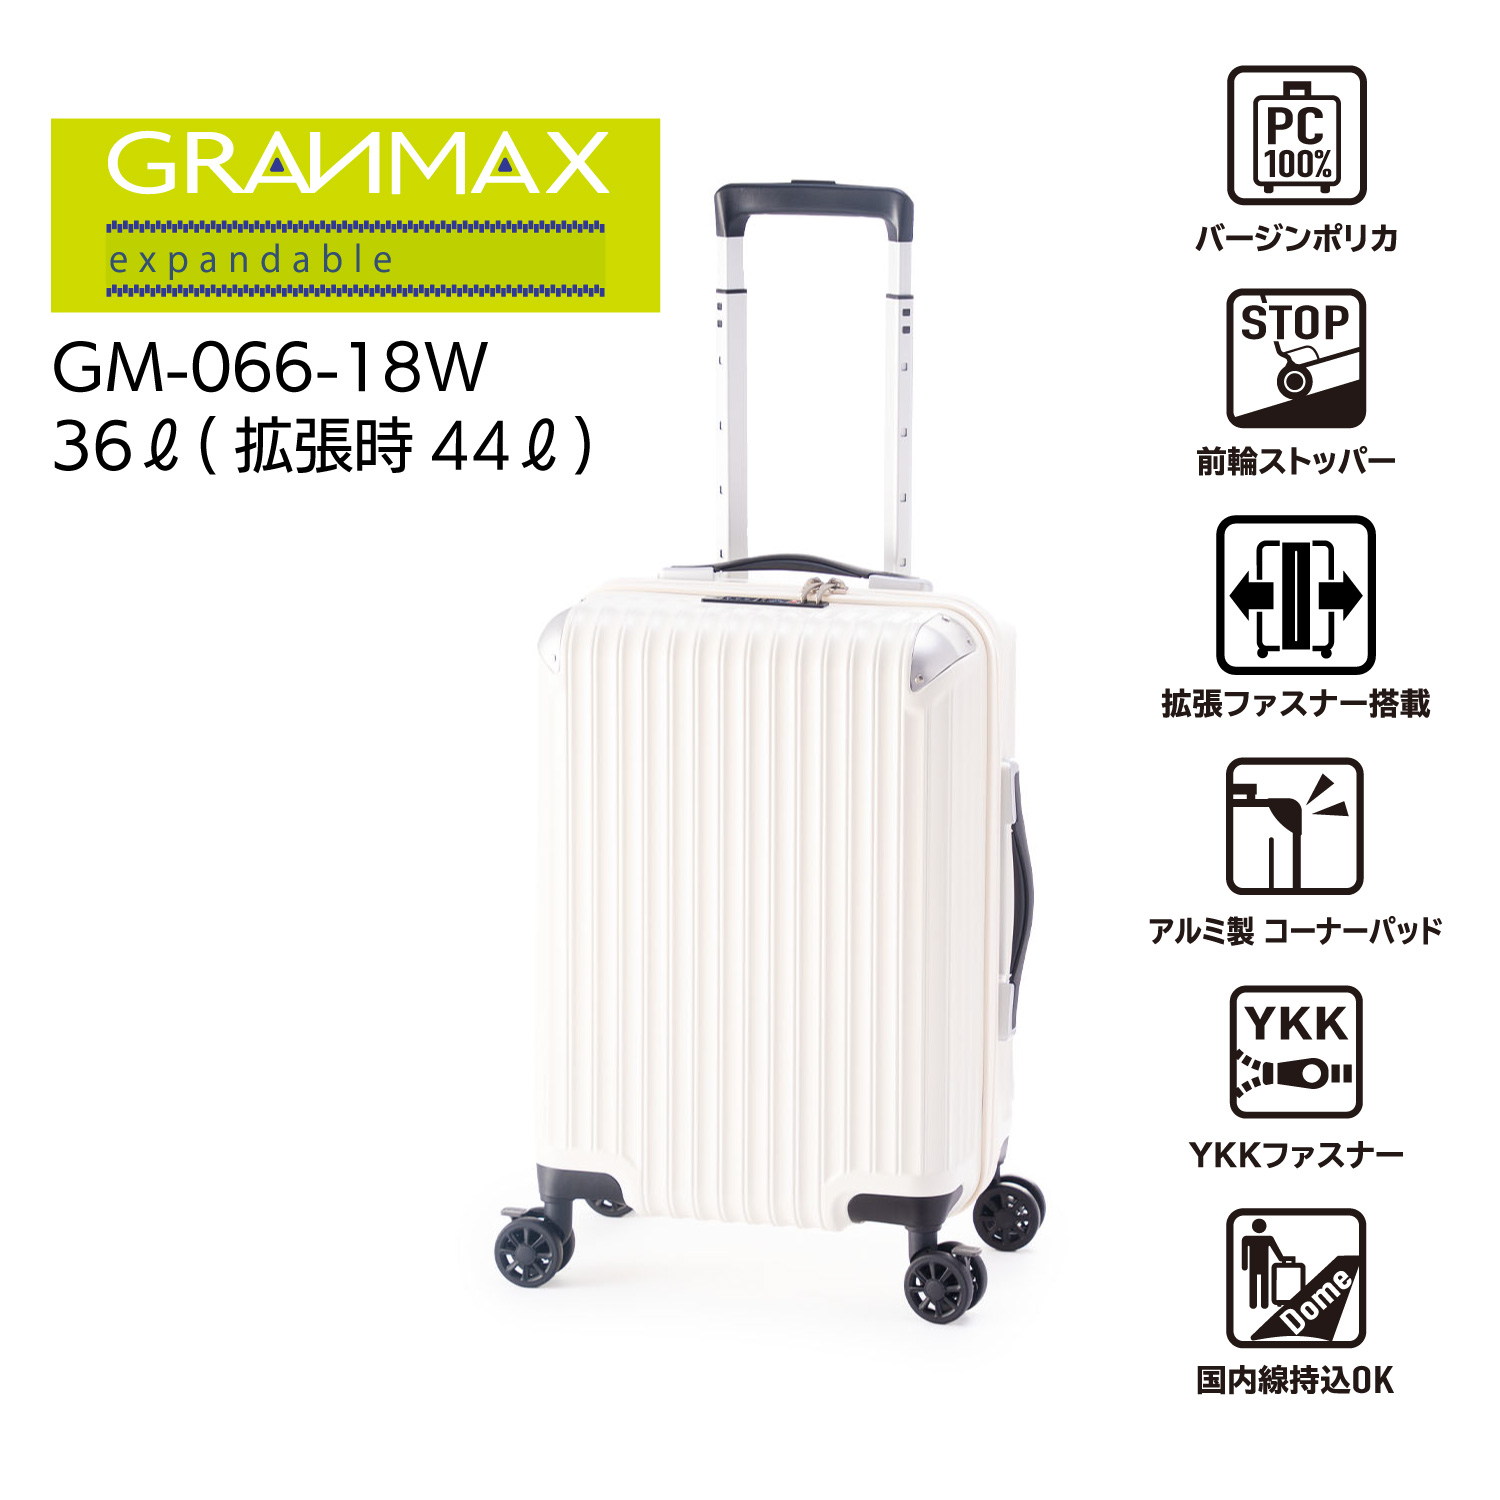 シンプルでスタイリッシュ!大容量の拡張付きファスナータイプ![GRANMAX]GM-066-18W[3〜4泊]36L→44L